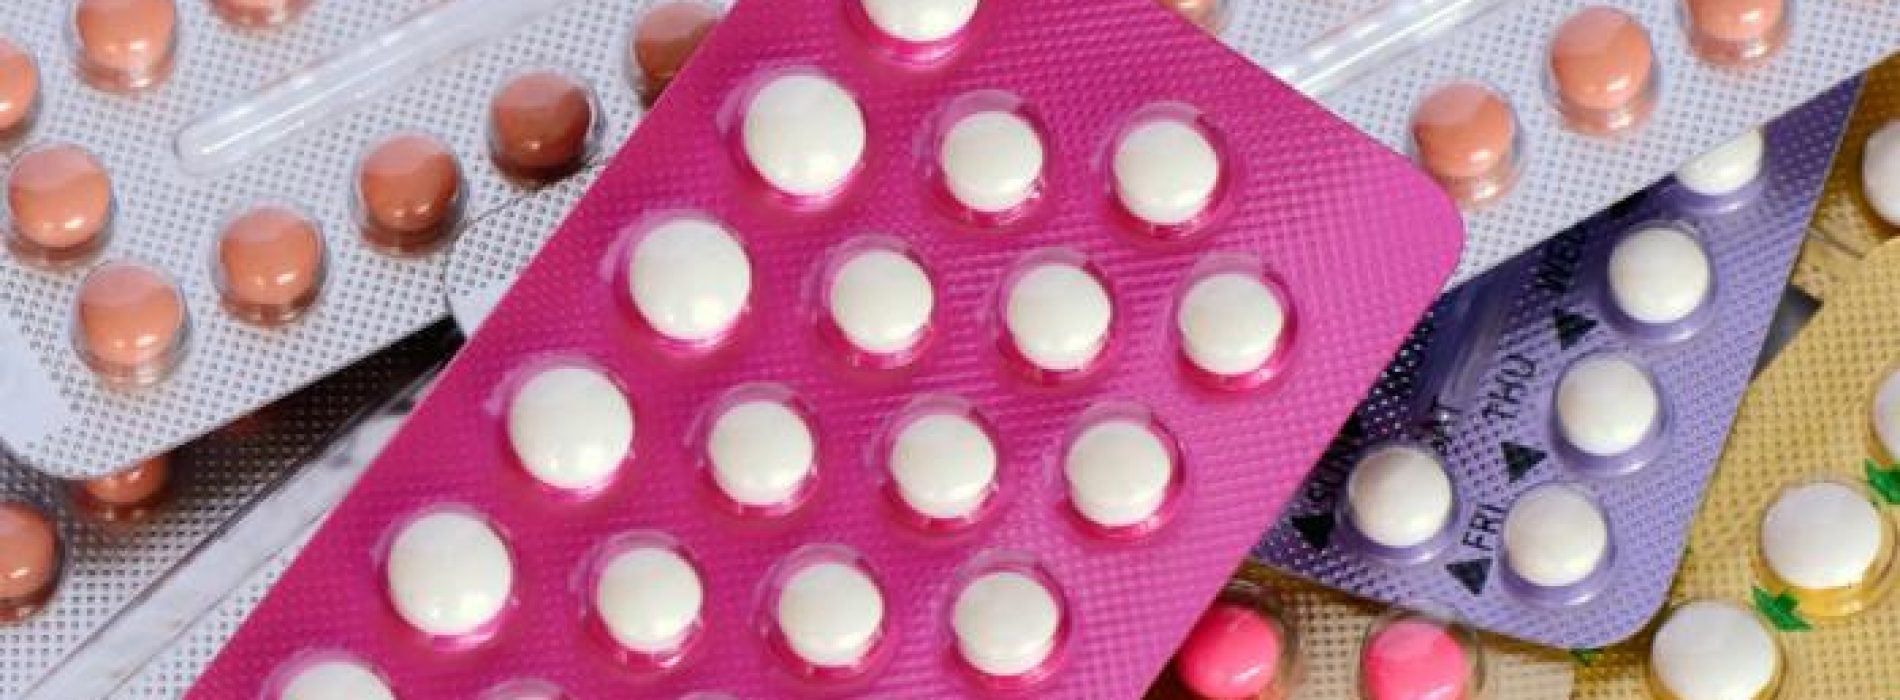 Medische waarschuwing: Orale anticonceptiva veroorzaken kanker